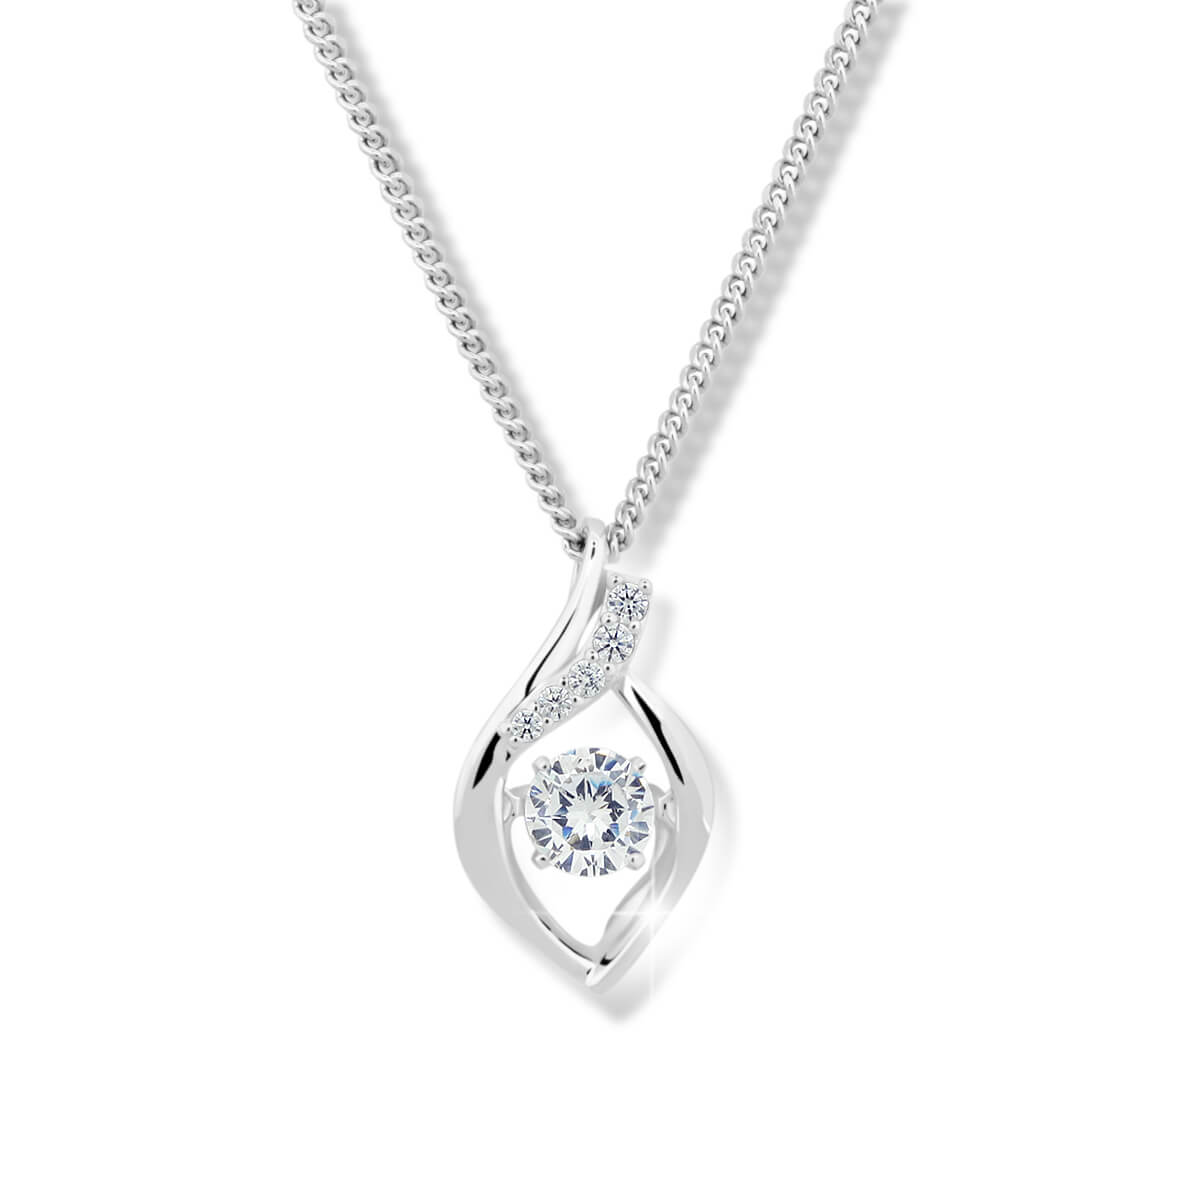 Modesi Nádherný náhrdelník s krystalem a zirkony M43066 (řetízek, přívěsek)